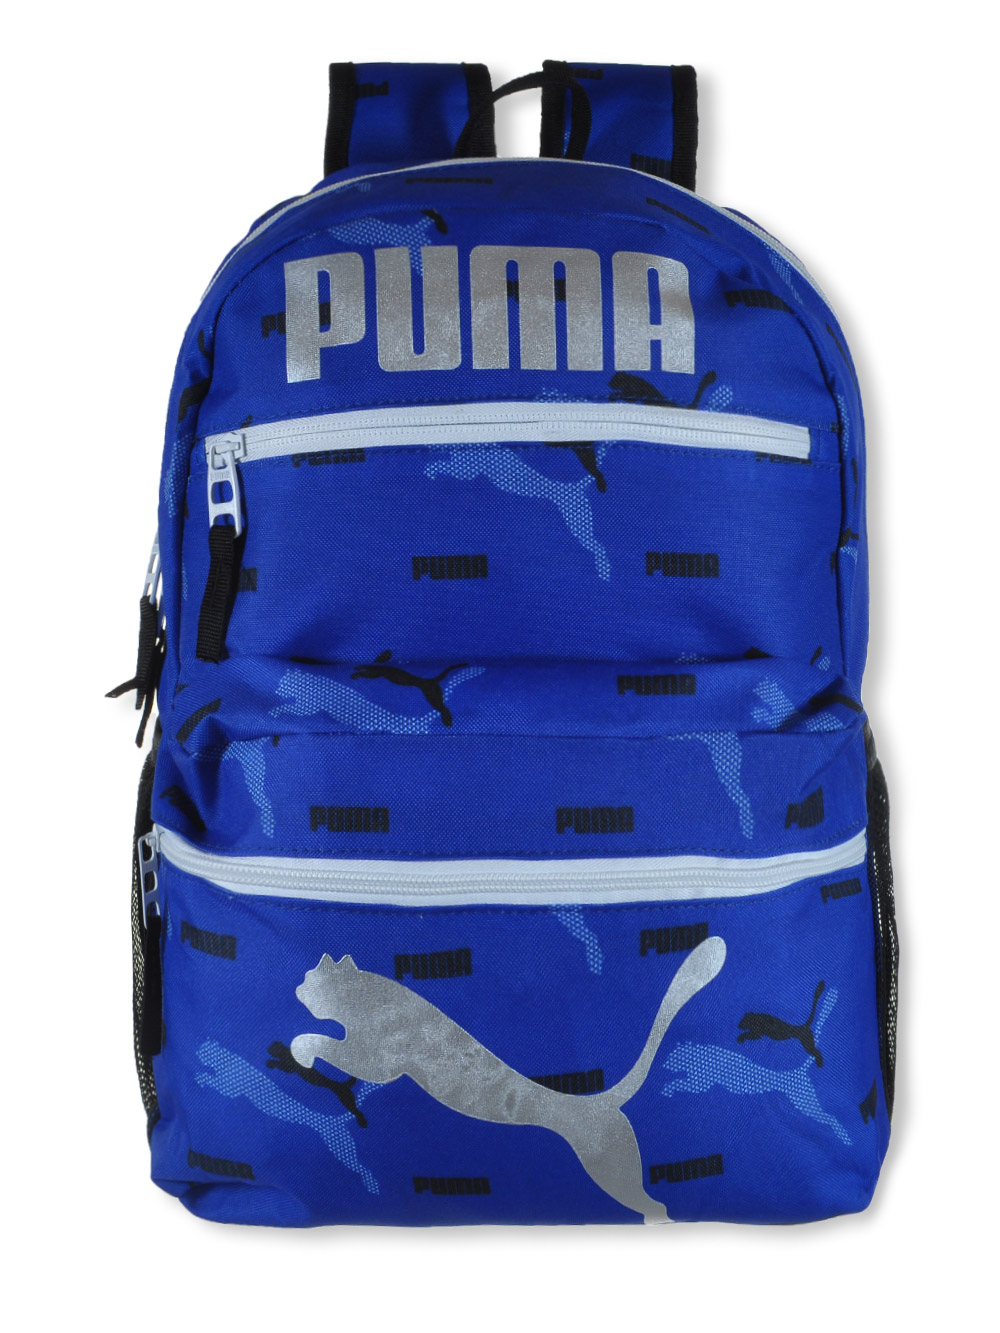 PUMA x TINY Kids' Backpack